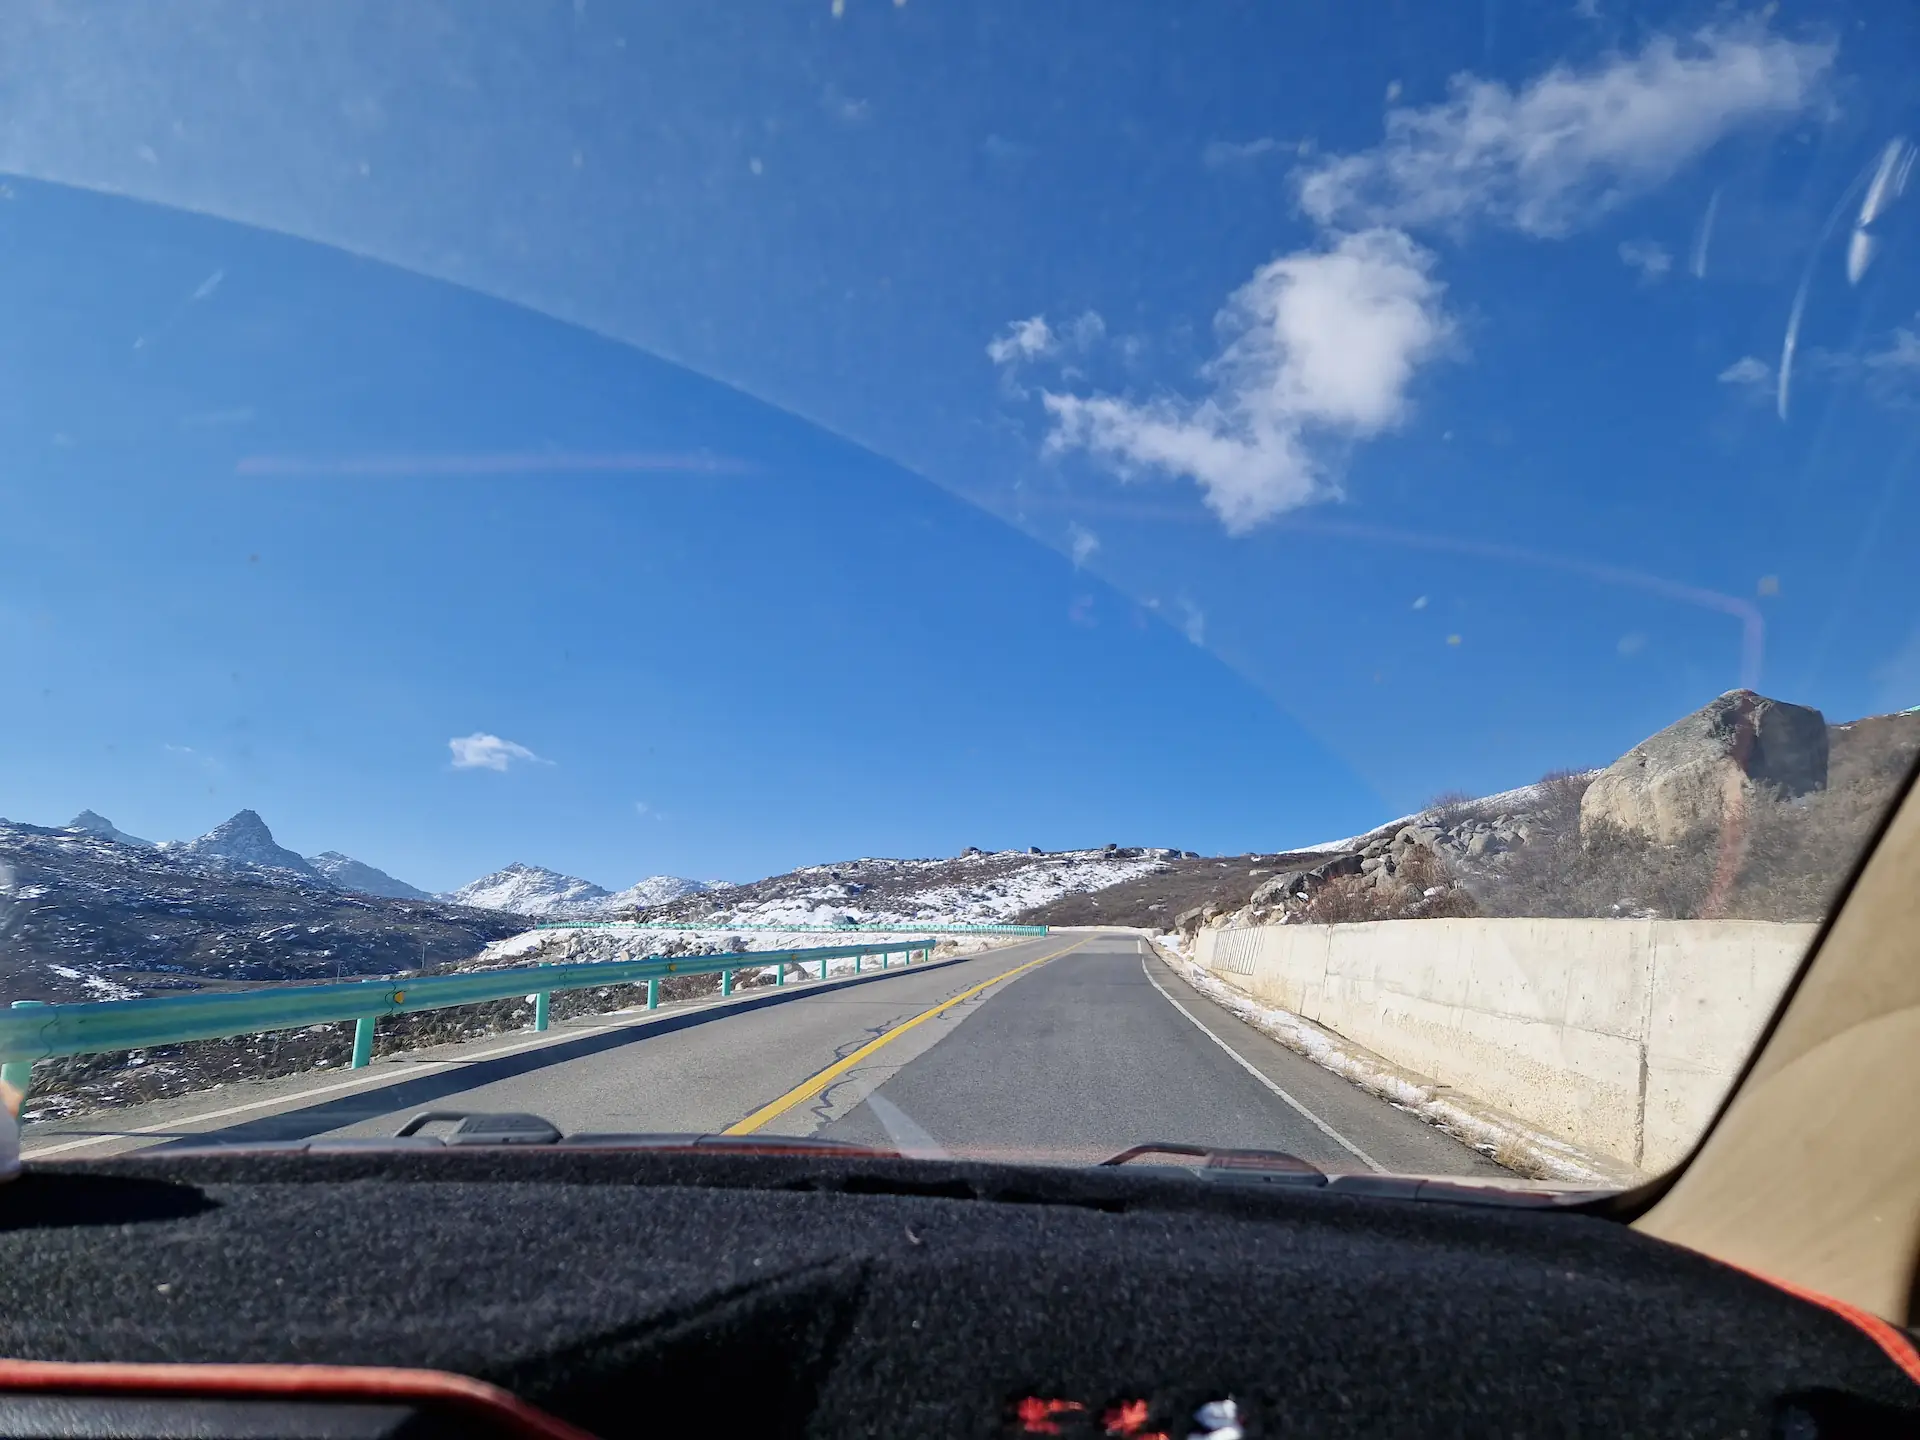 Le tableau de bord de la voiture avec une route vide et un paysage montagneux